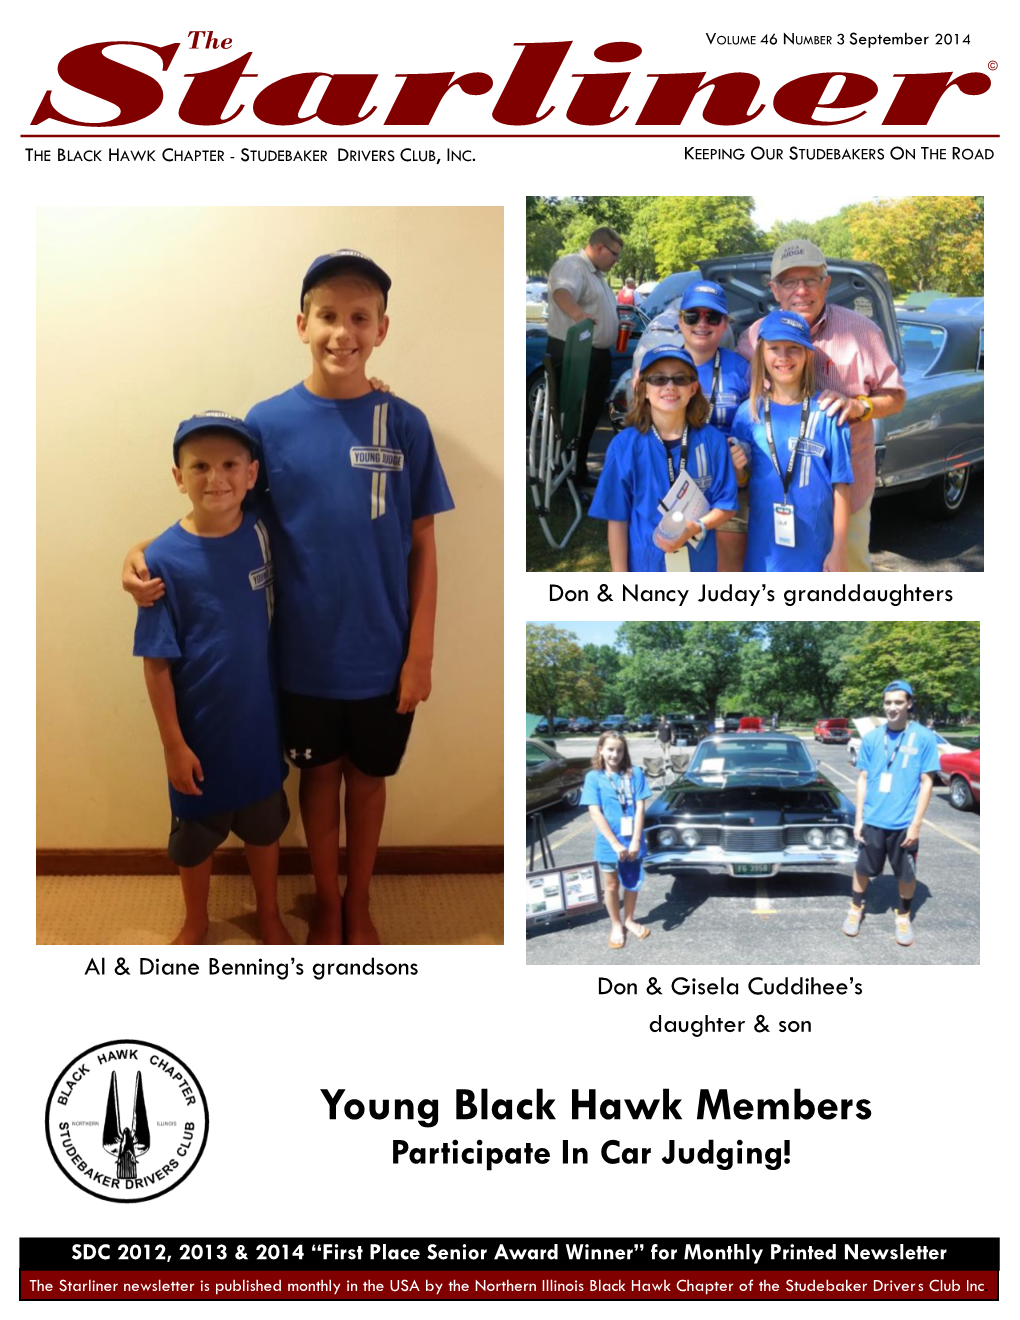 Young Black Hawk Members Participate in Car Judging!